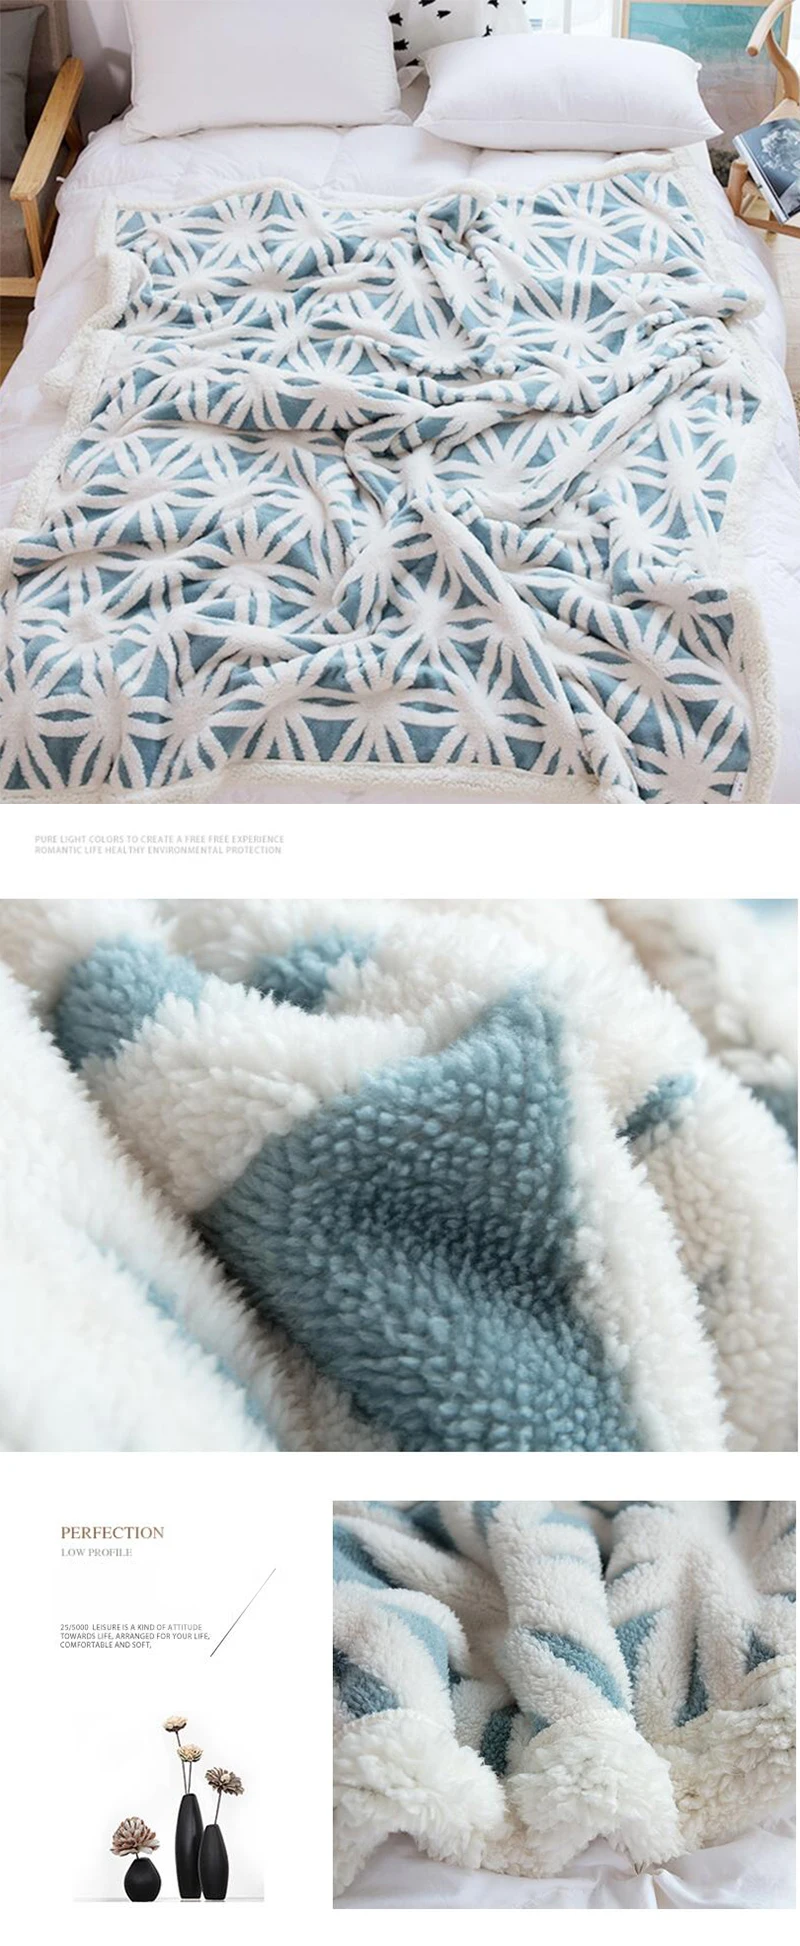 Супер мягкое фланелевое одеяло для кровати жаккардовое геометрическое теплое толстое пледы одеяло s Лист Покрывало Диван Механическая стирка